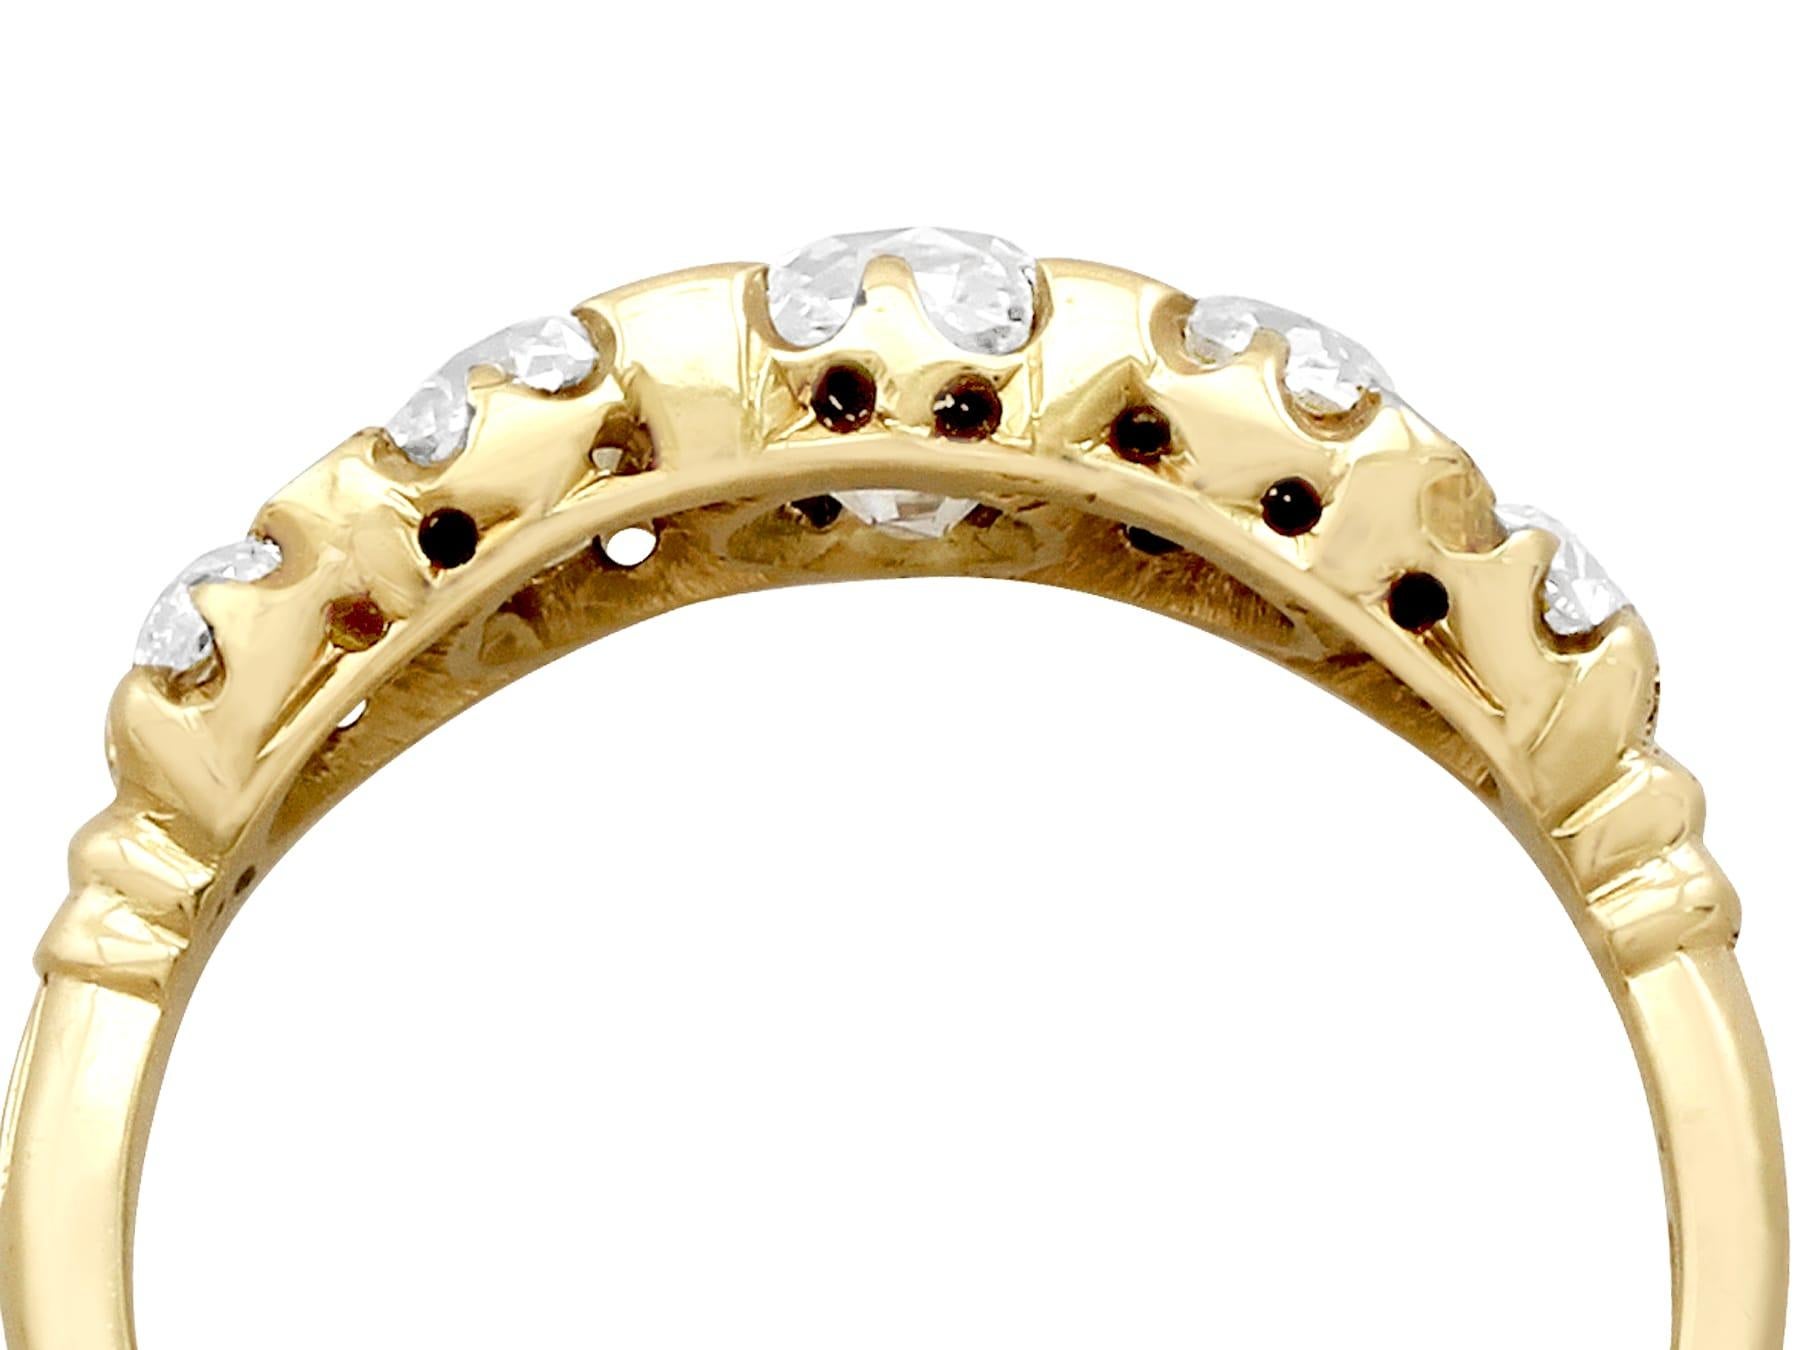 Eine atemberaubende, feine und beeindruckende antiken viktorianischen 1,78 Karat Diamant und 18 Karat Gelbgold fünf Stein-Ring; Teil unserer antiken Schmuck / Estate Jewelry Sammlungen.

Dieser atemberaubende antike Diamantring mit fünf Steinen ist